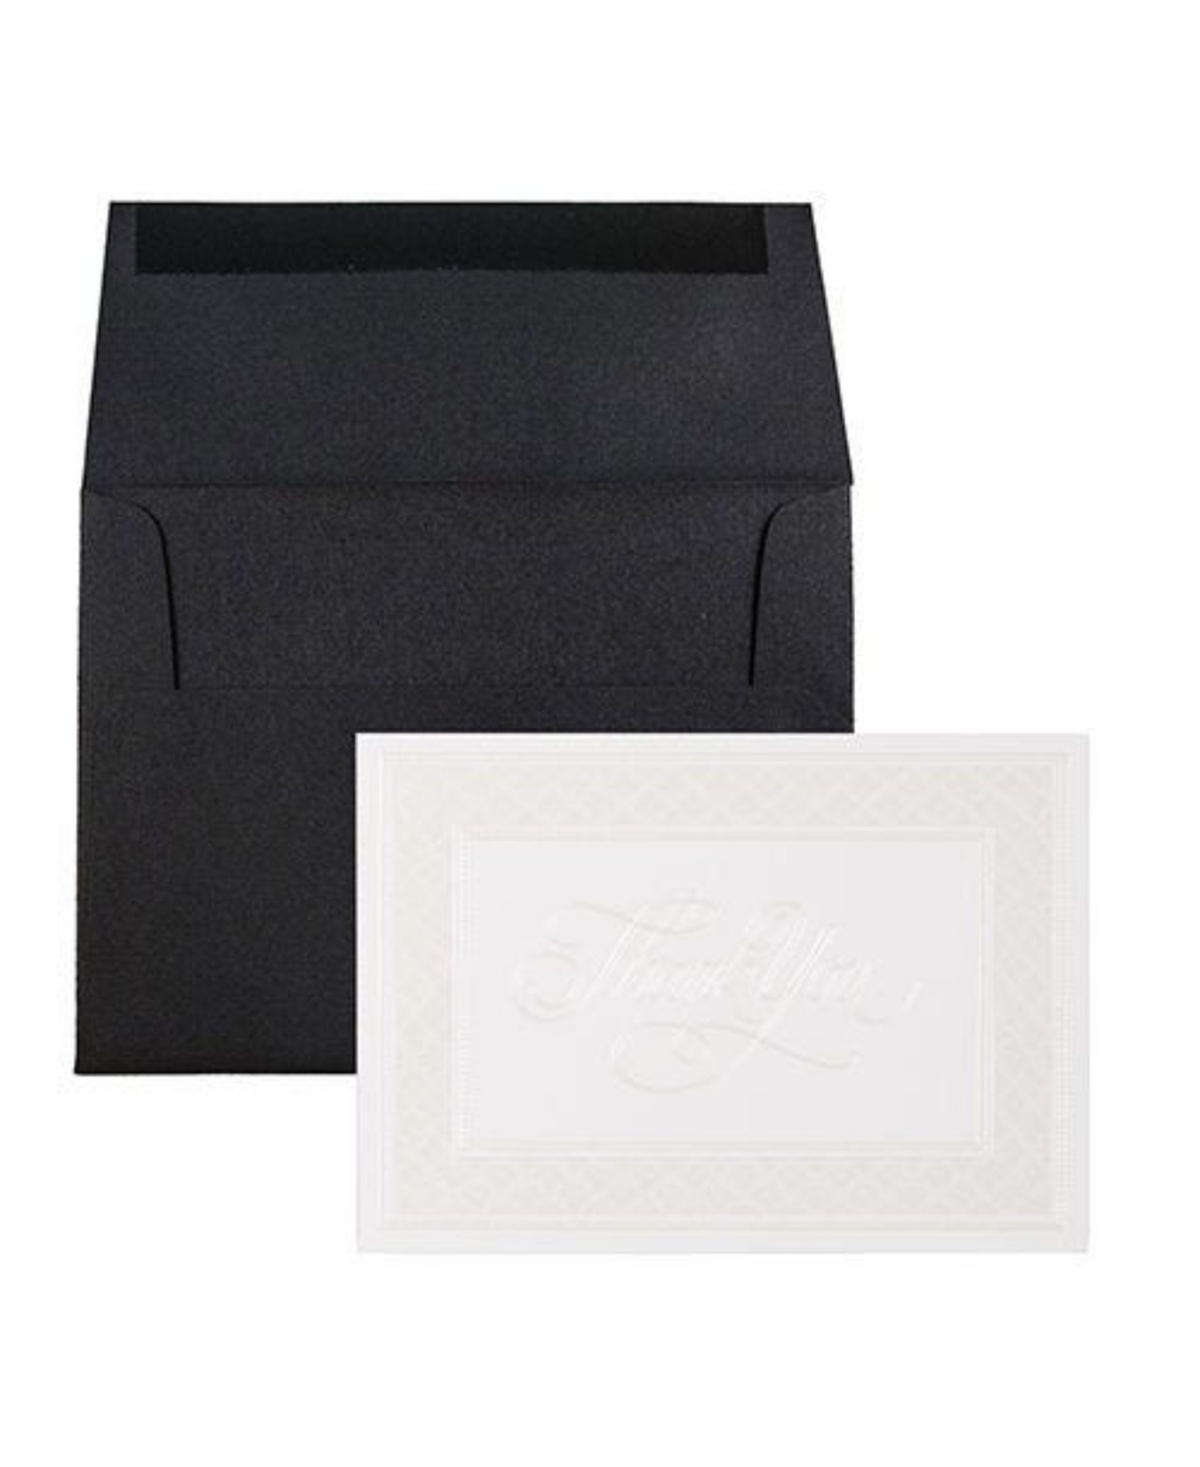 Jam Paper Thank You Card Sets In Border Cards Black Linen Envelopes